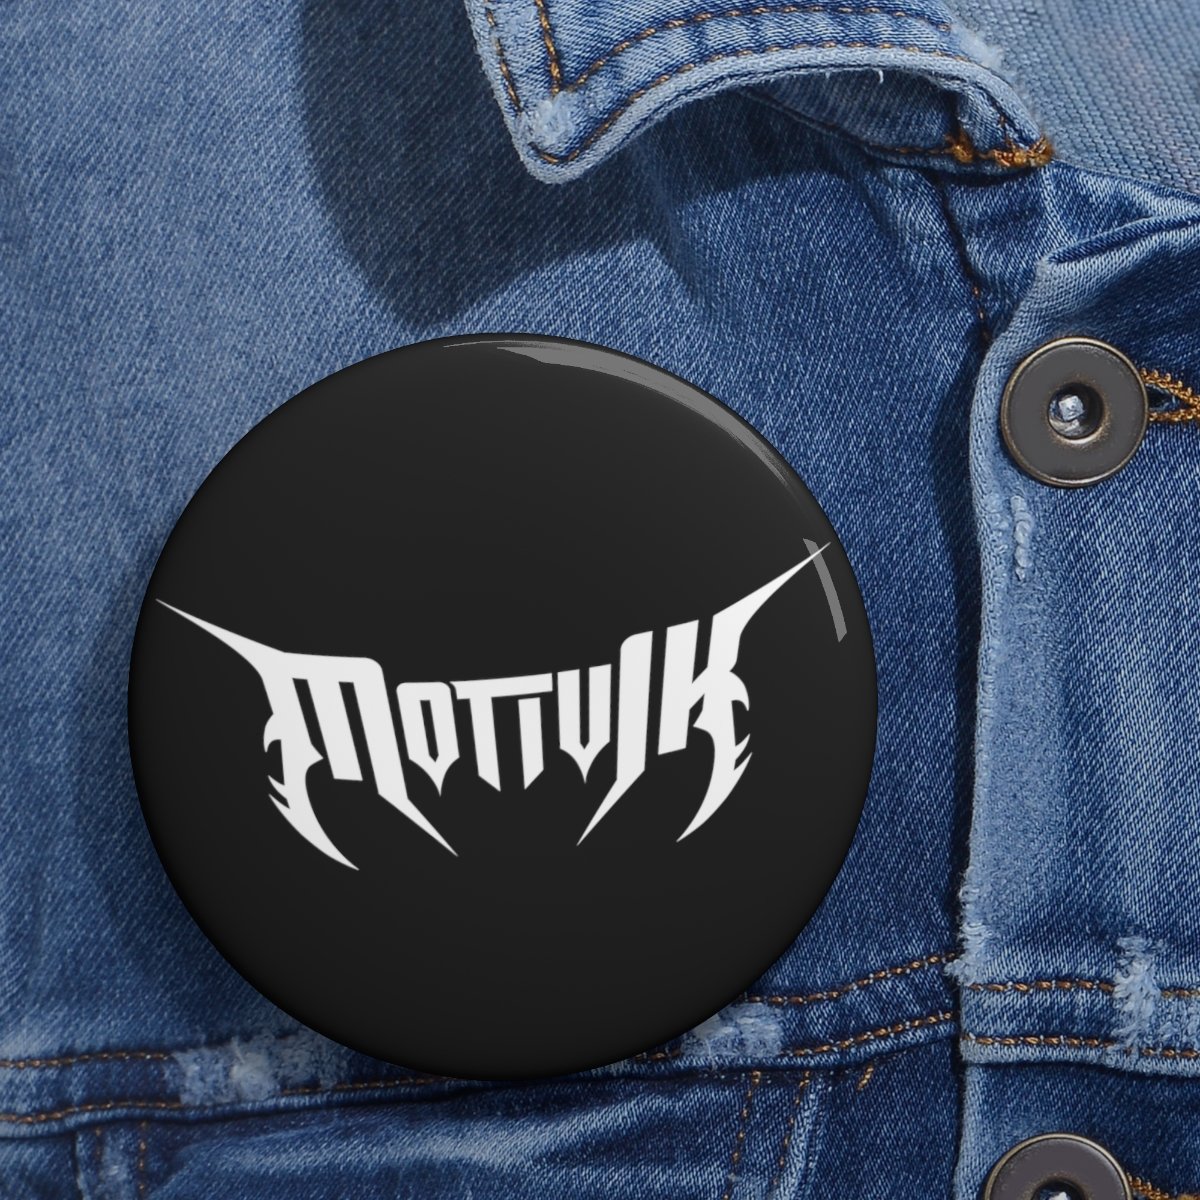 Motivik White Logo Pin Buttons